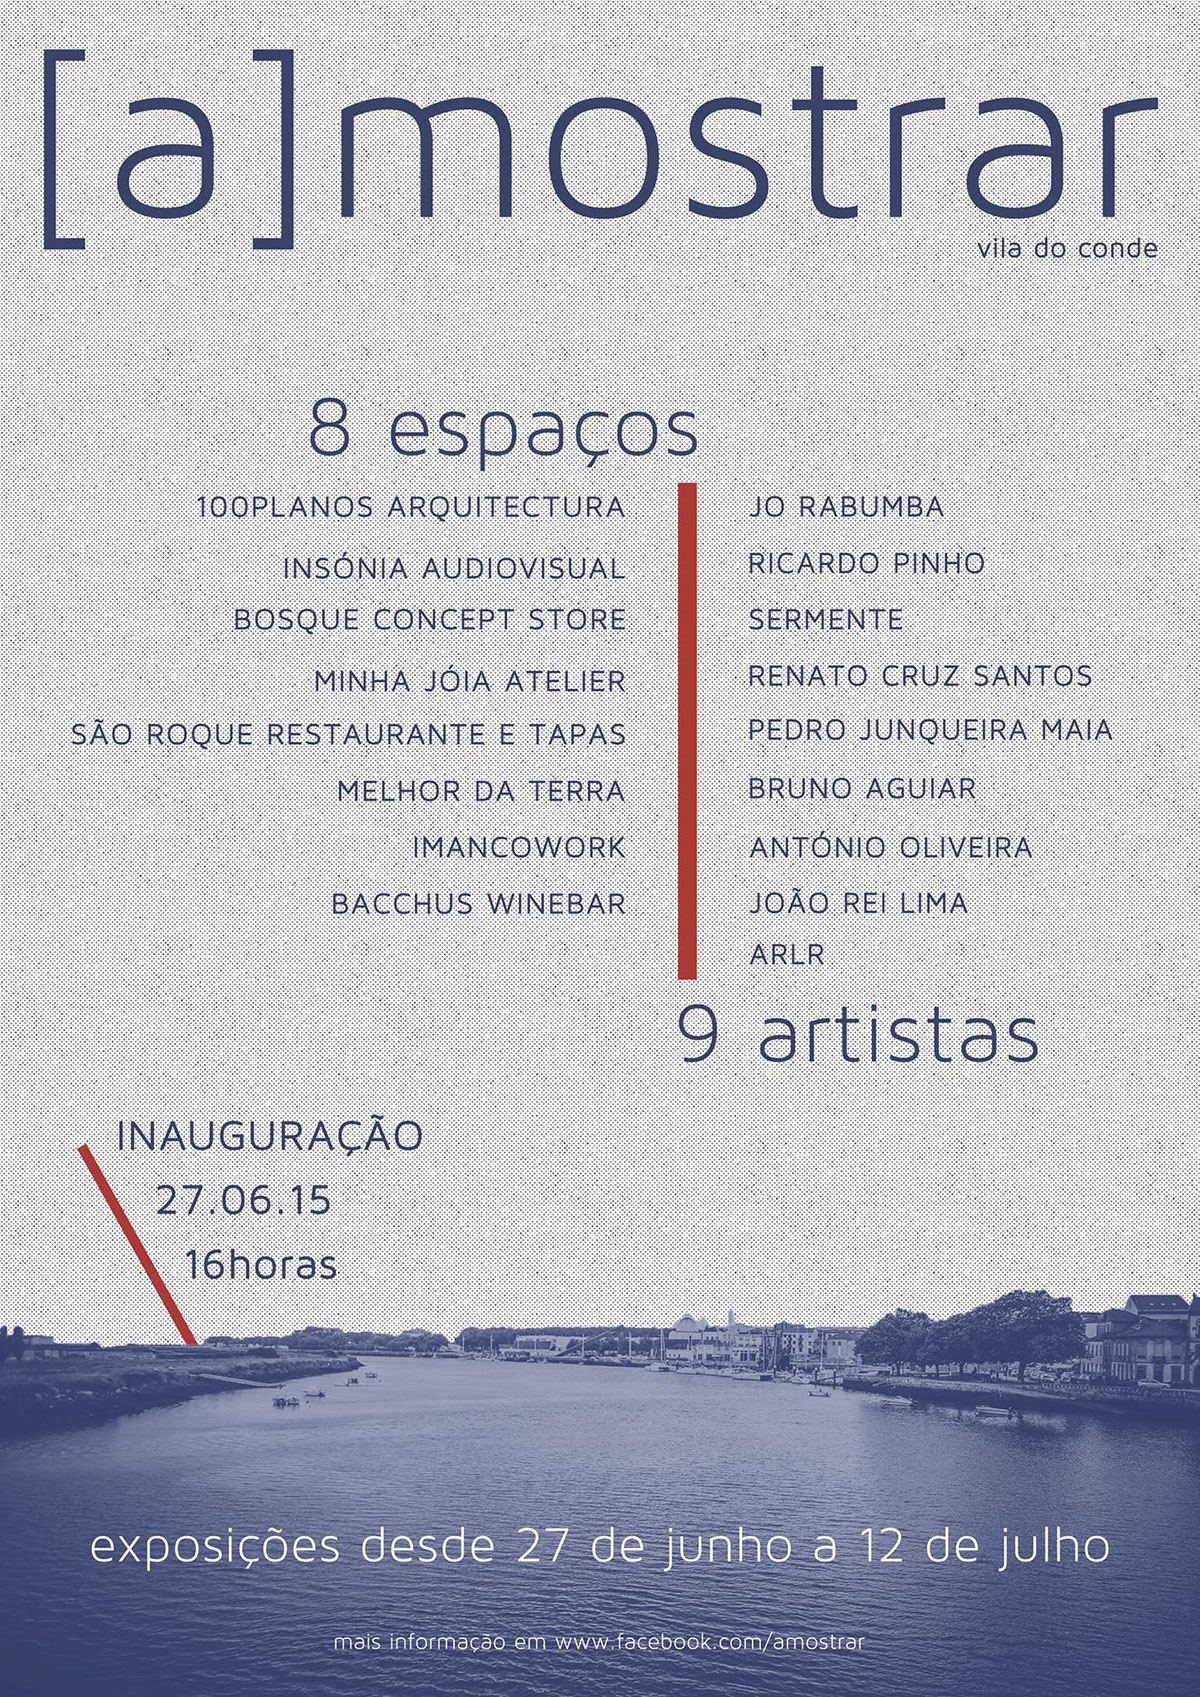 [a]mostrar exhibitions vila do conde Portugal art artists